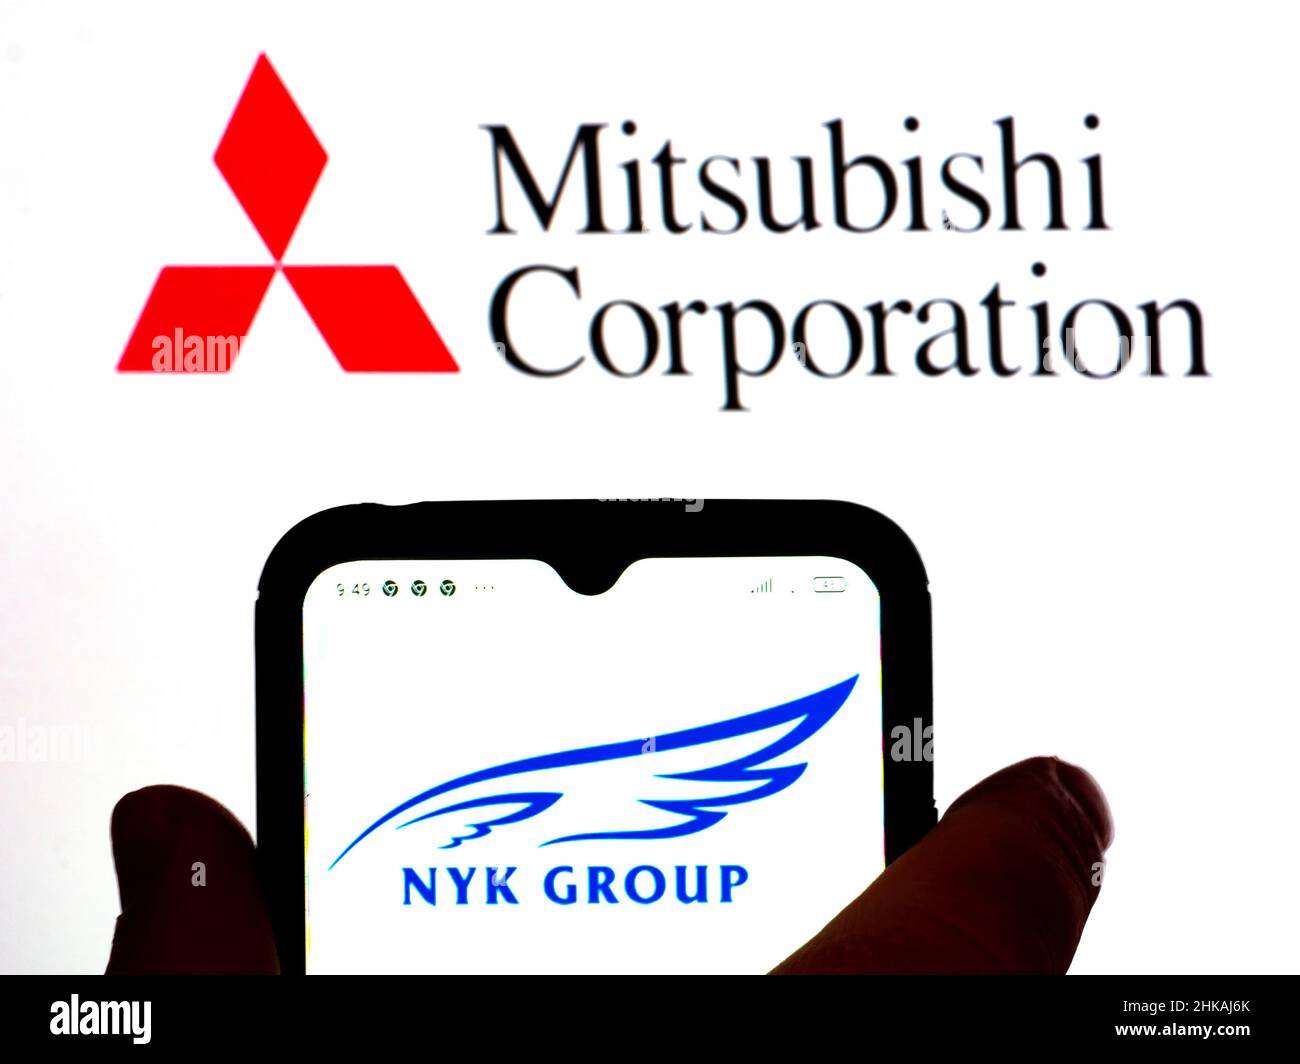 Dans cette illustration, le logo du groupe Nippon Yusen Kabushiki (NYK) est affiché sur l'écran d'un smartphone avec le logo Mitsubishi Corporation en arrière-plan. Banque D'Images